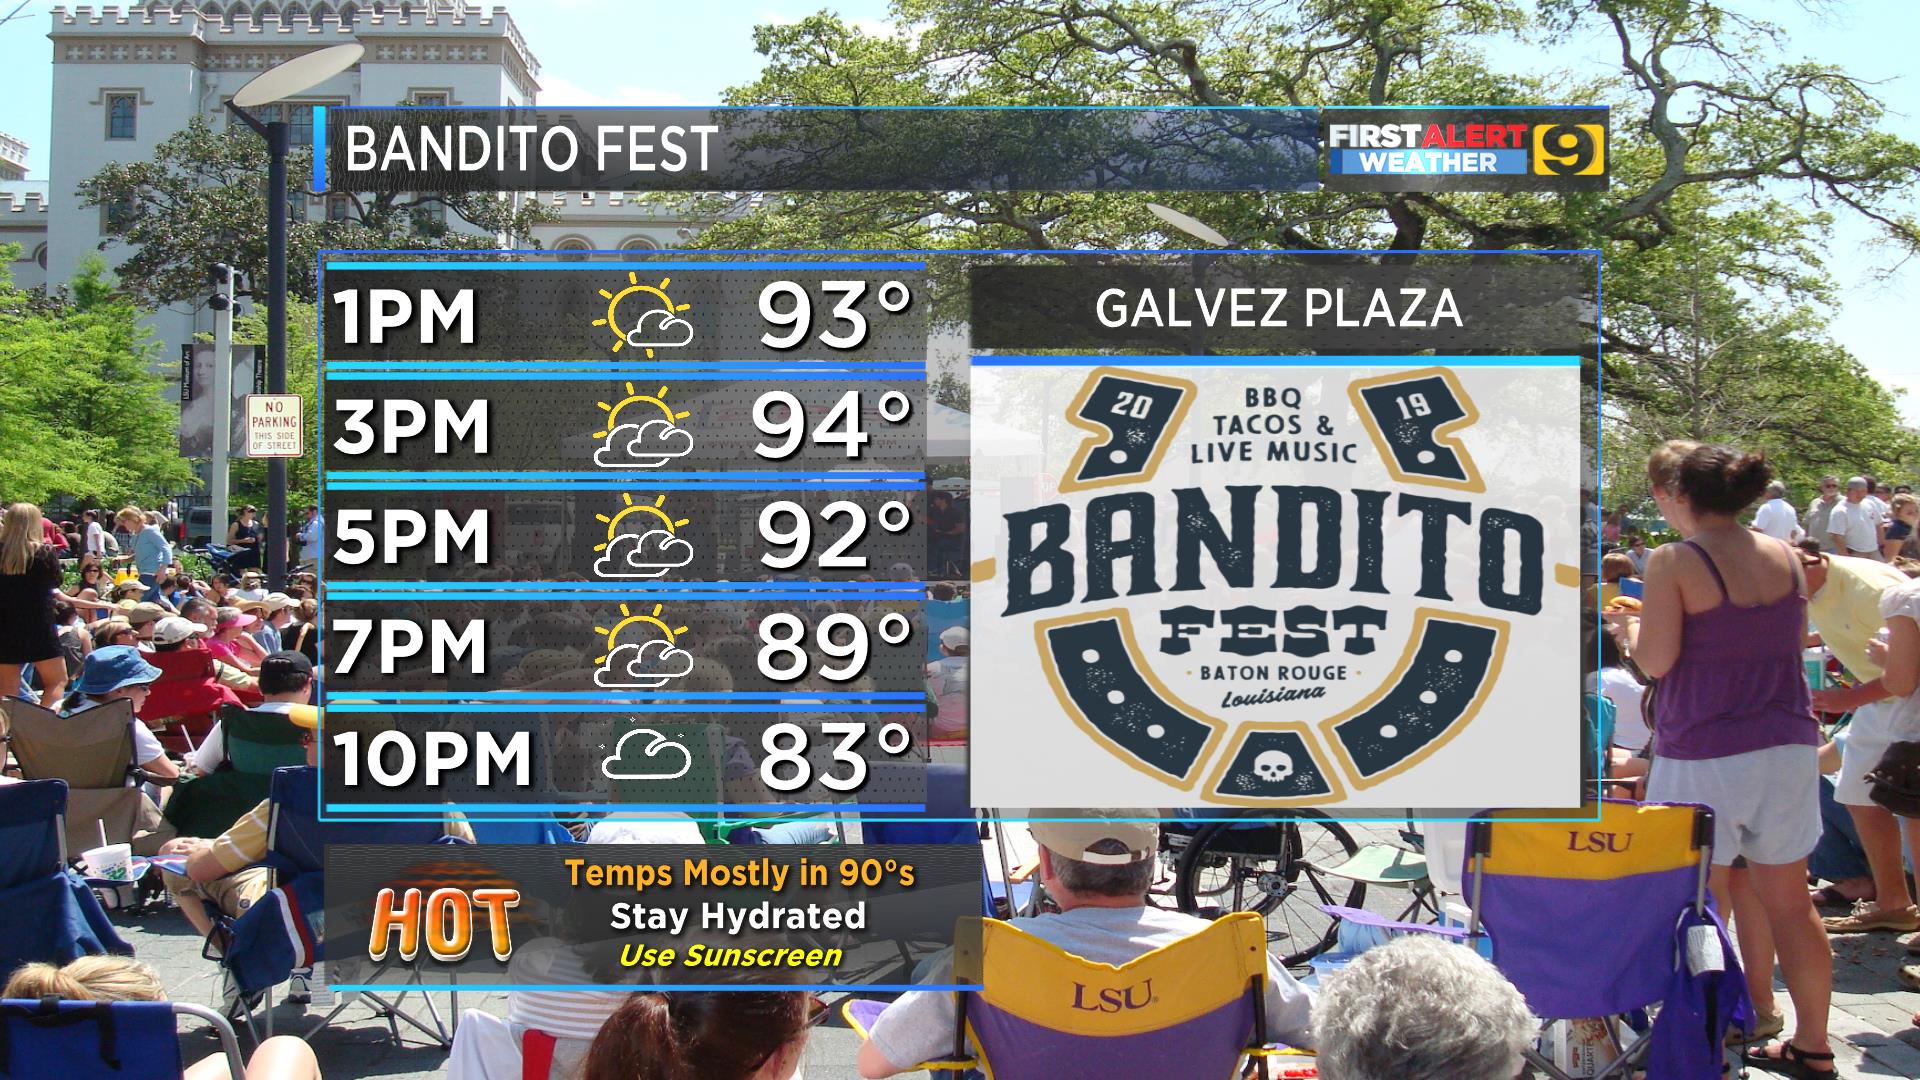 Bandito Fest